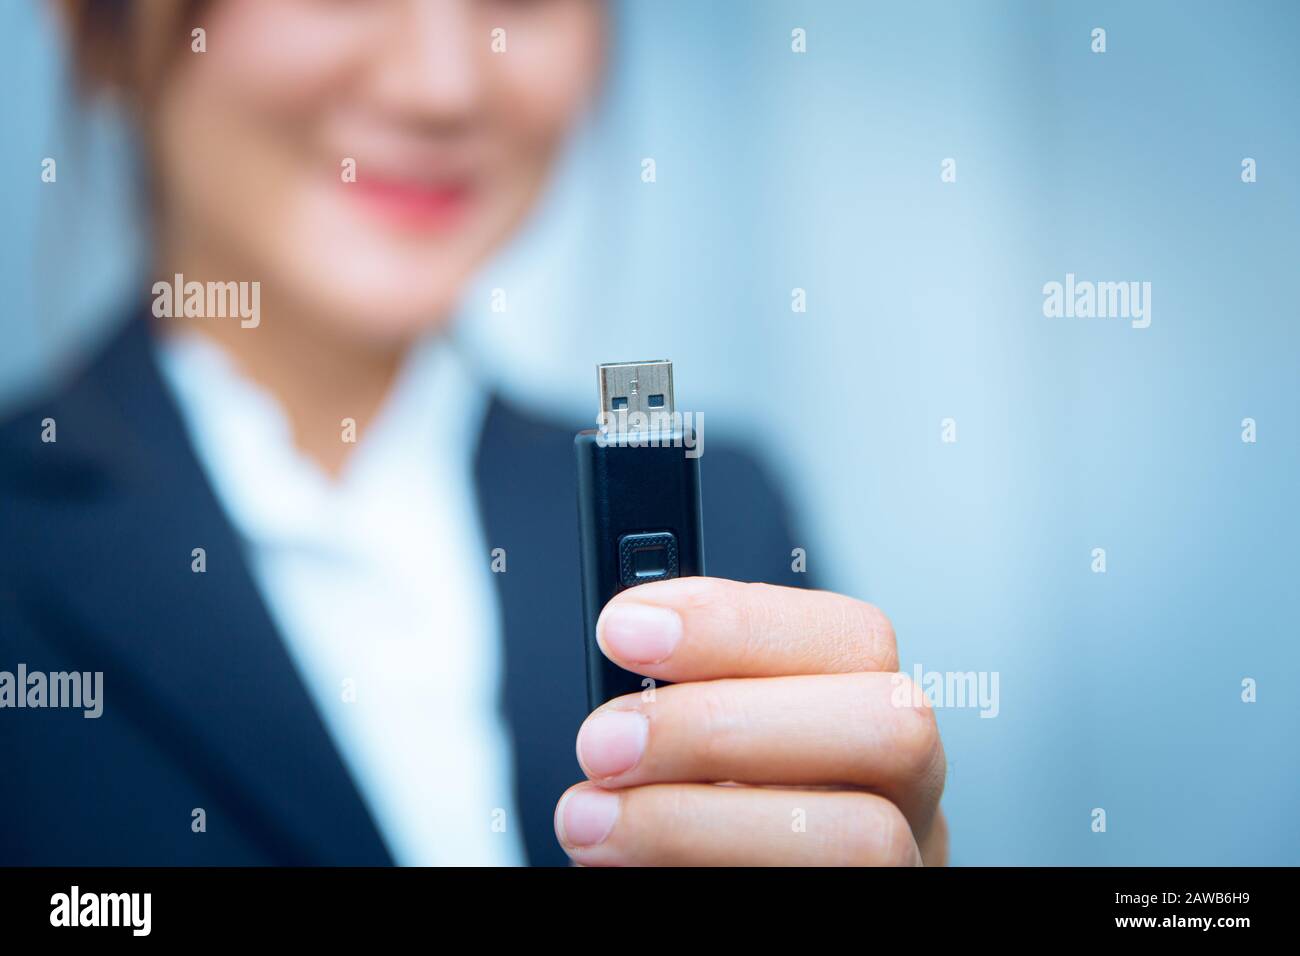 Clé Usb Pour clé Usb, clé USB Ou stockage de données numériques pour les professionnels de l'ordinateur personnel heureux d'utiliser. Banque D'Images